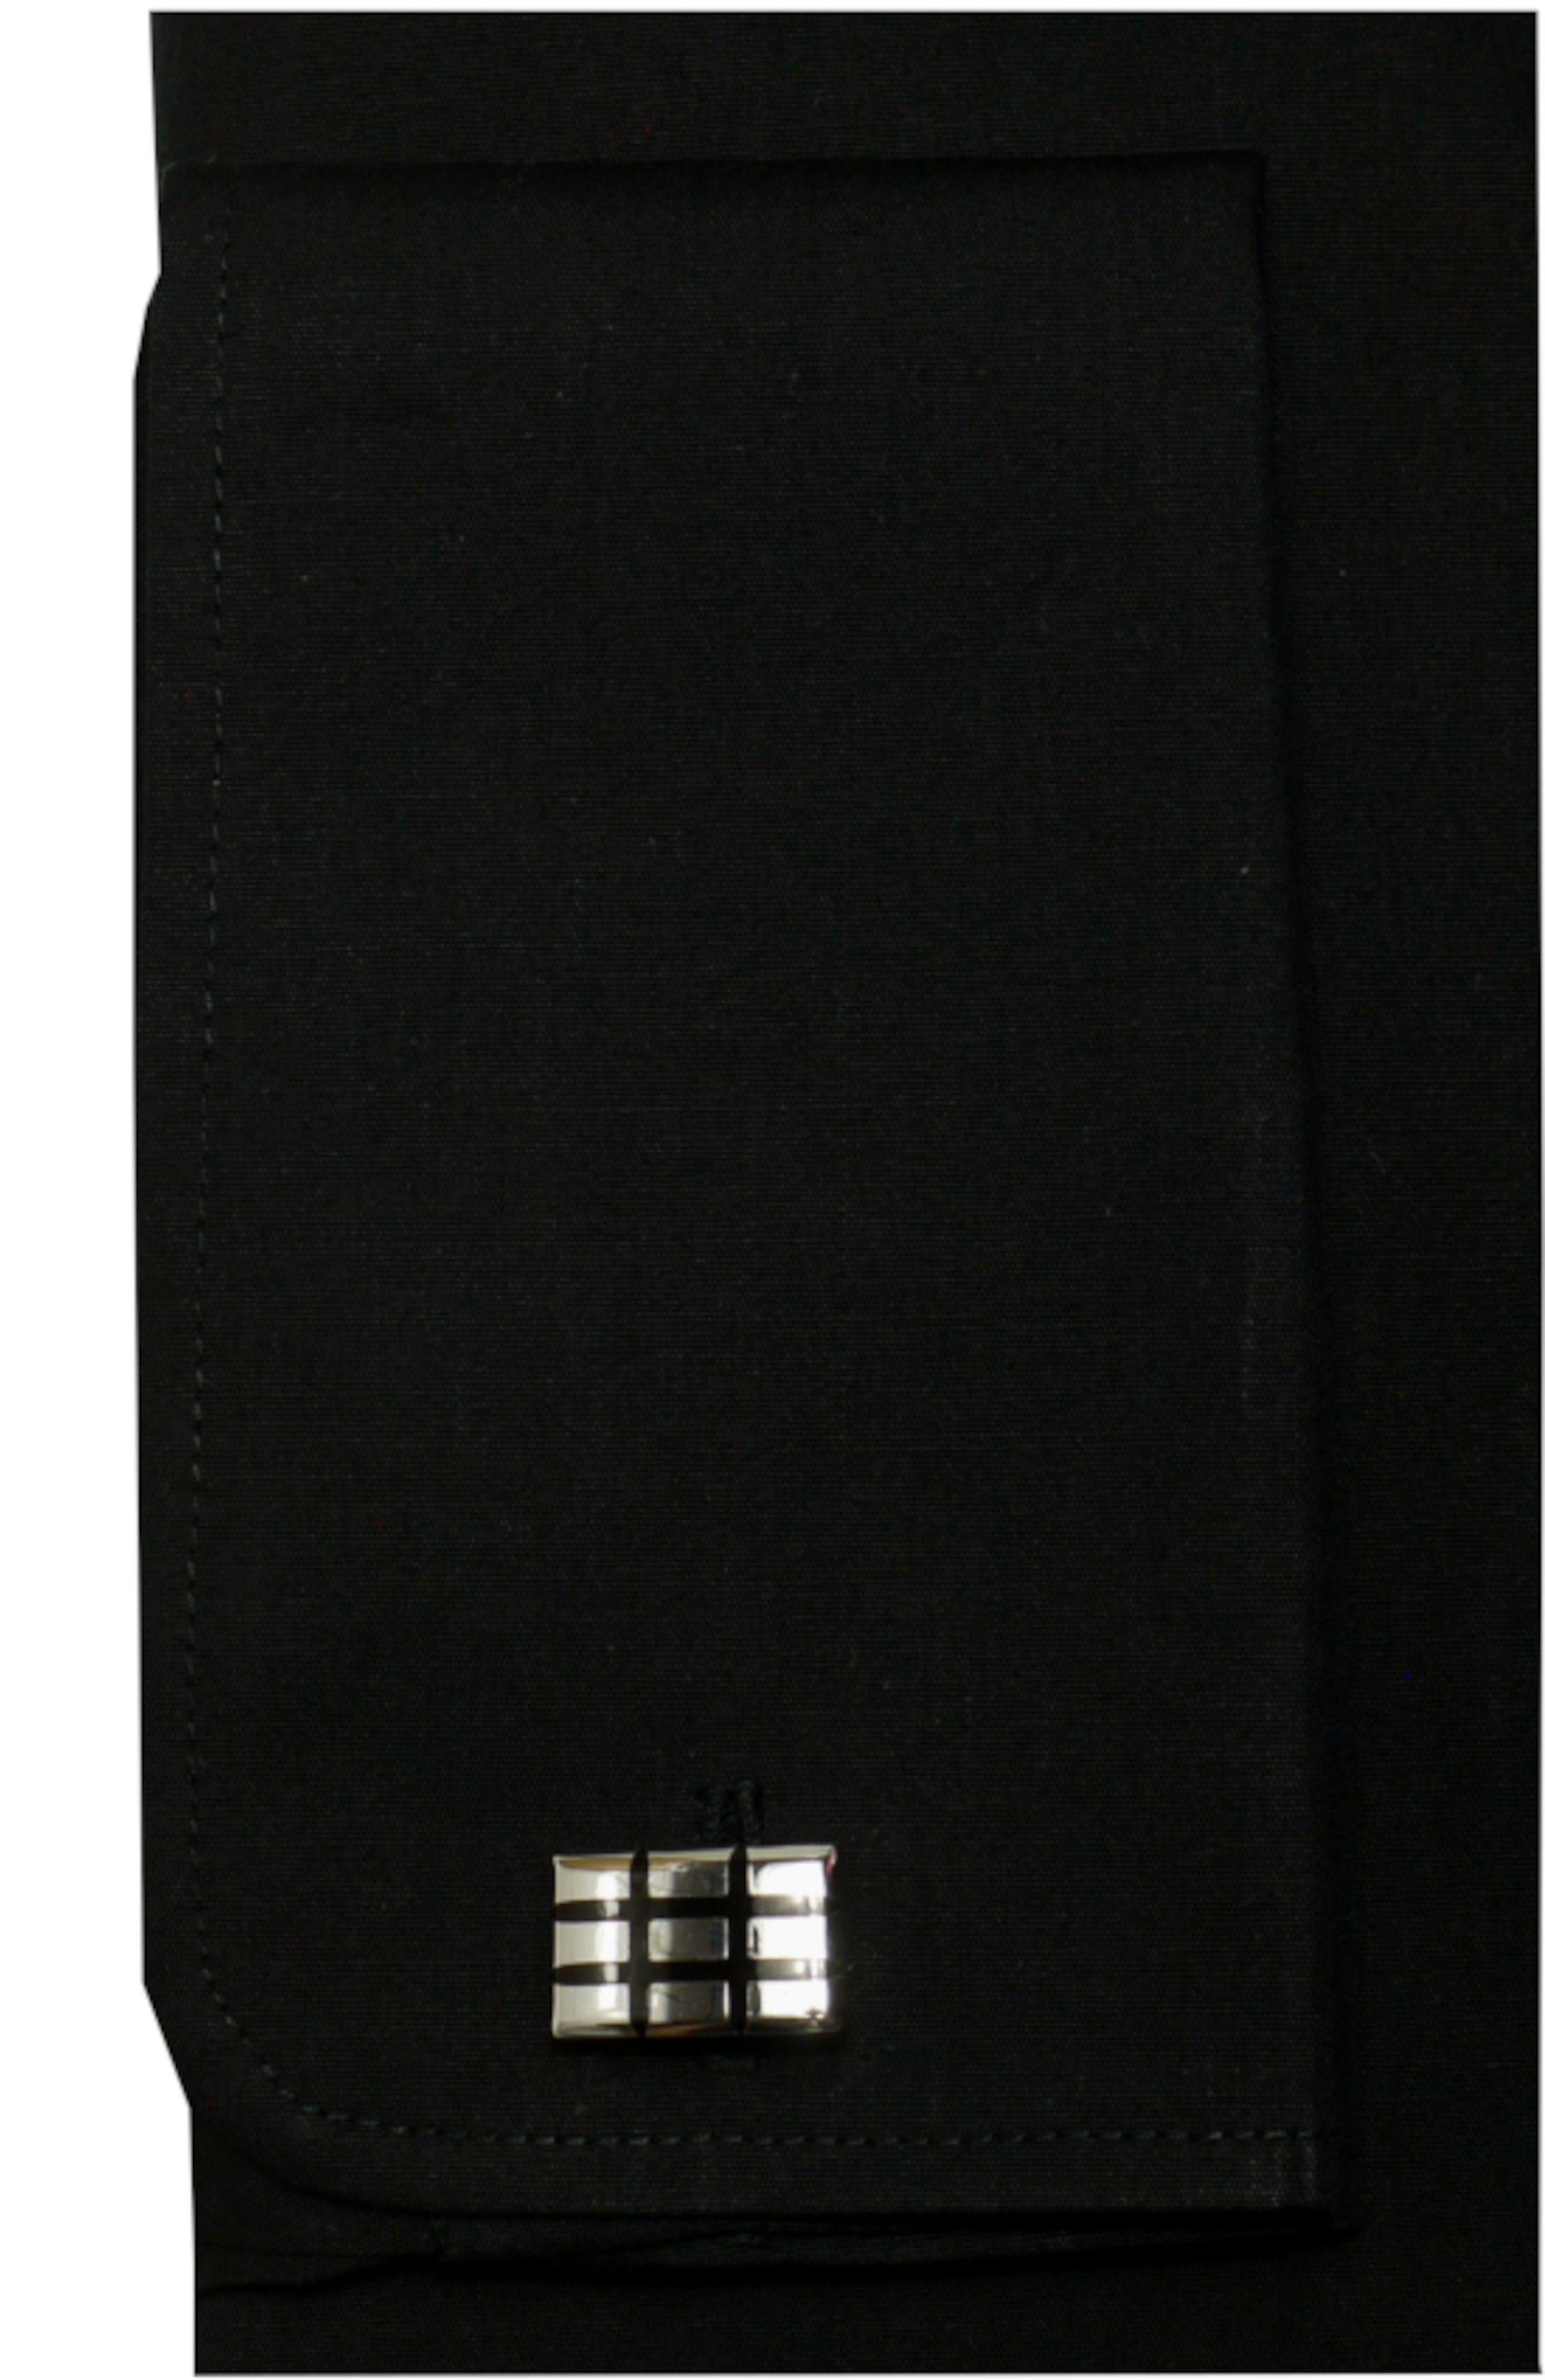 Fit Huber Regular Umschlag-Manschette, Smokinghemd Plissee, Hemden Kläppchen-Kragen, schwarz HU-0171